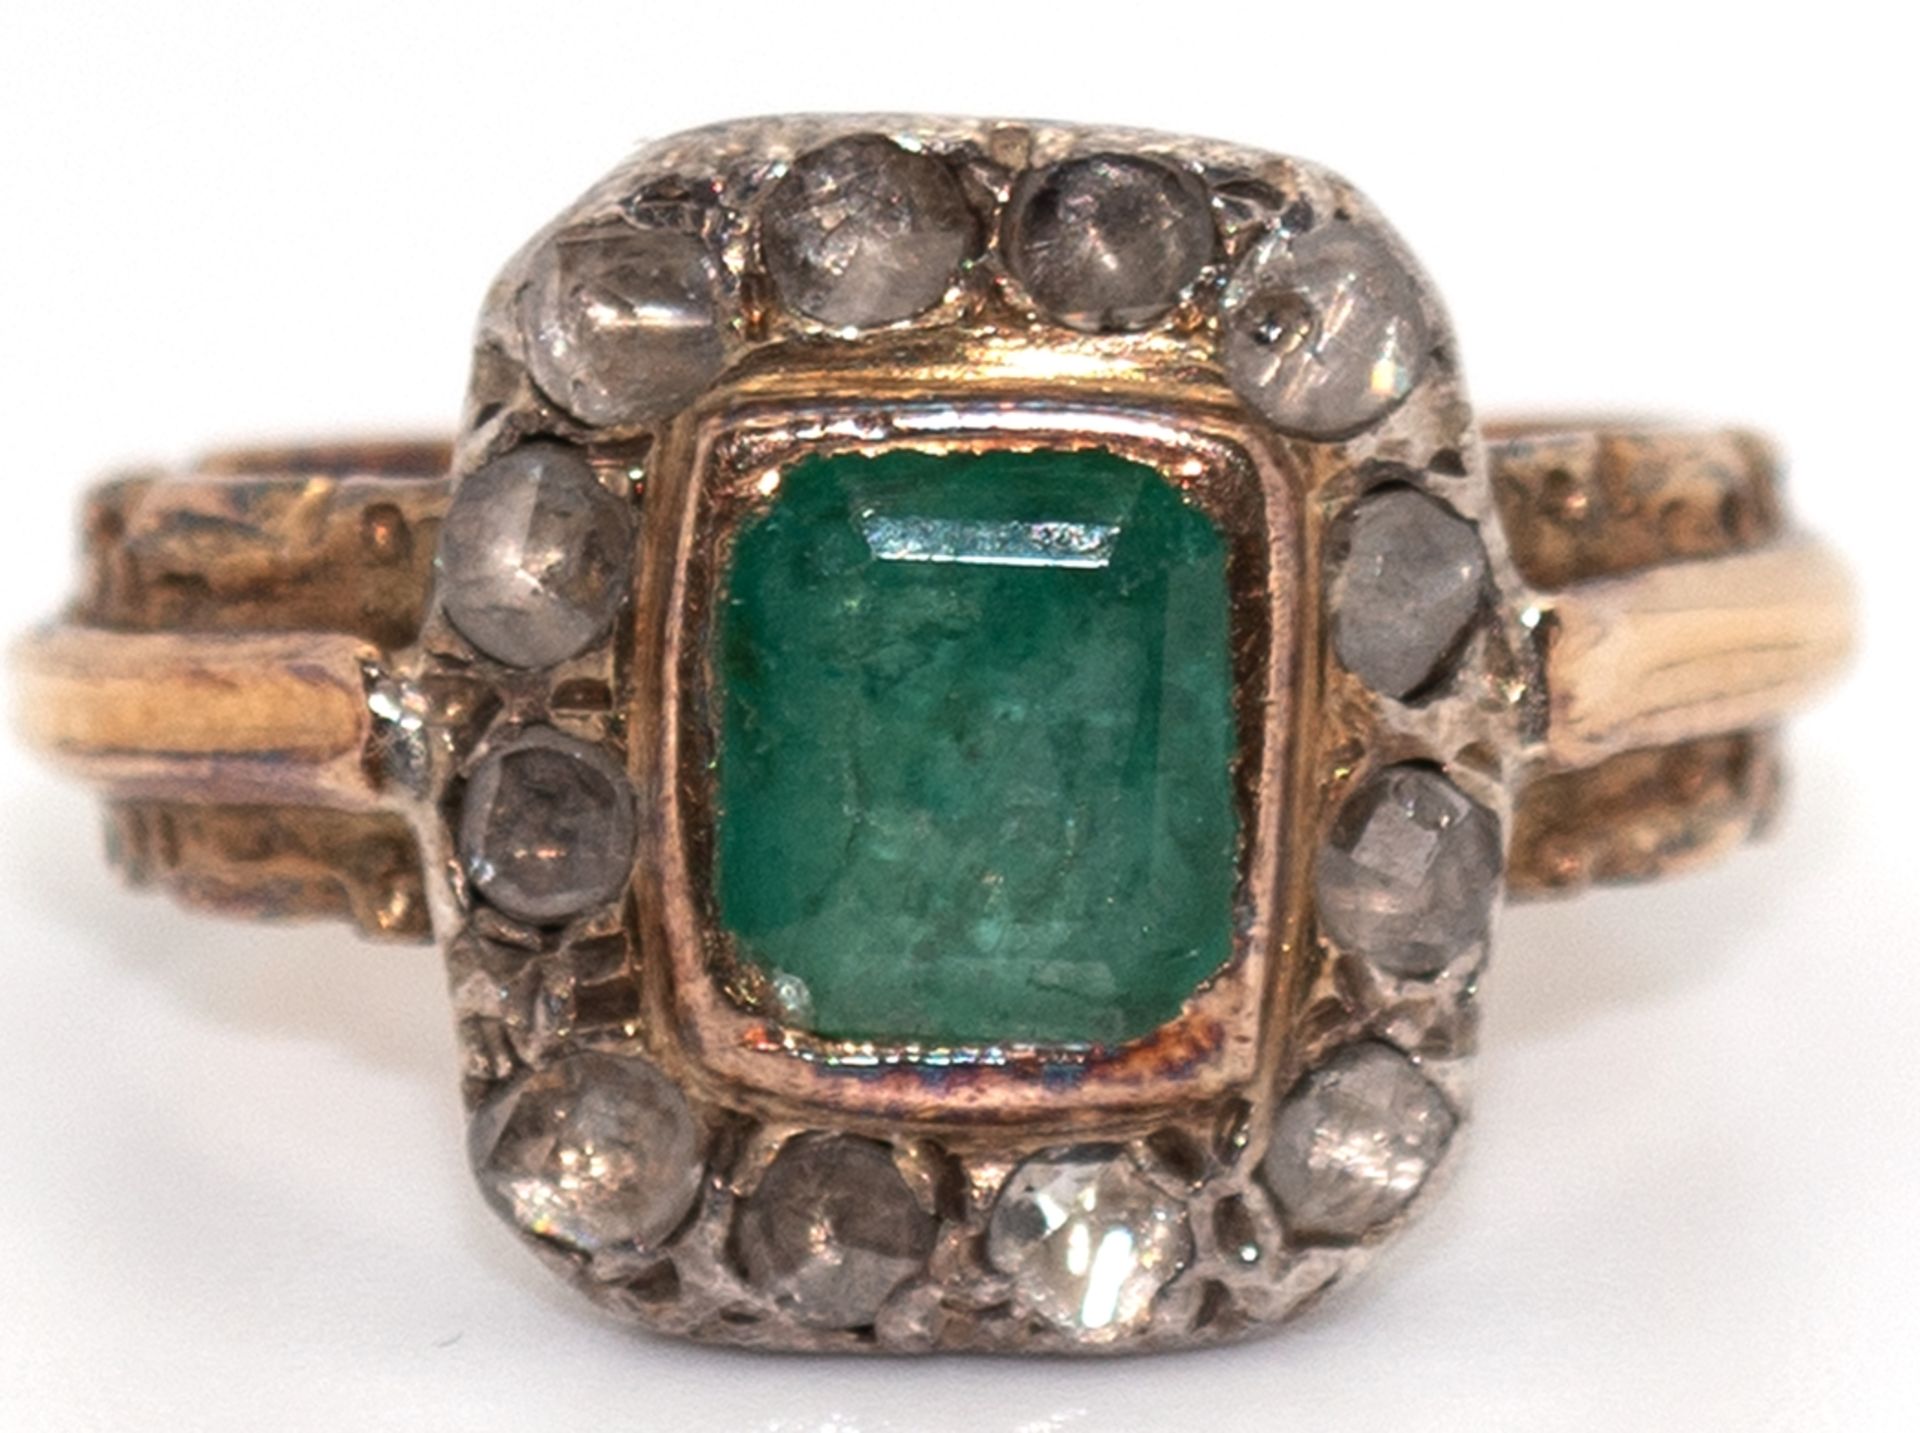 Smaragd- Diamantring, 750er GG, rechteckiger Smaragd, eingefasst von 12 Diamantrosen, reliefierte S